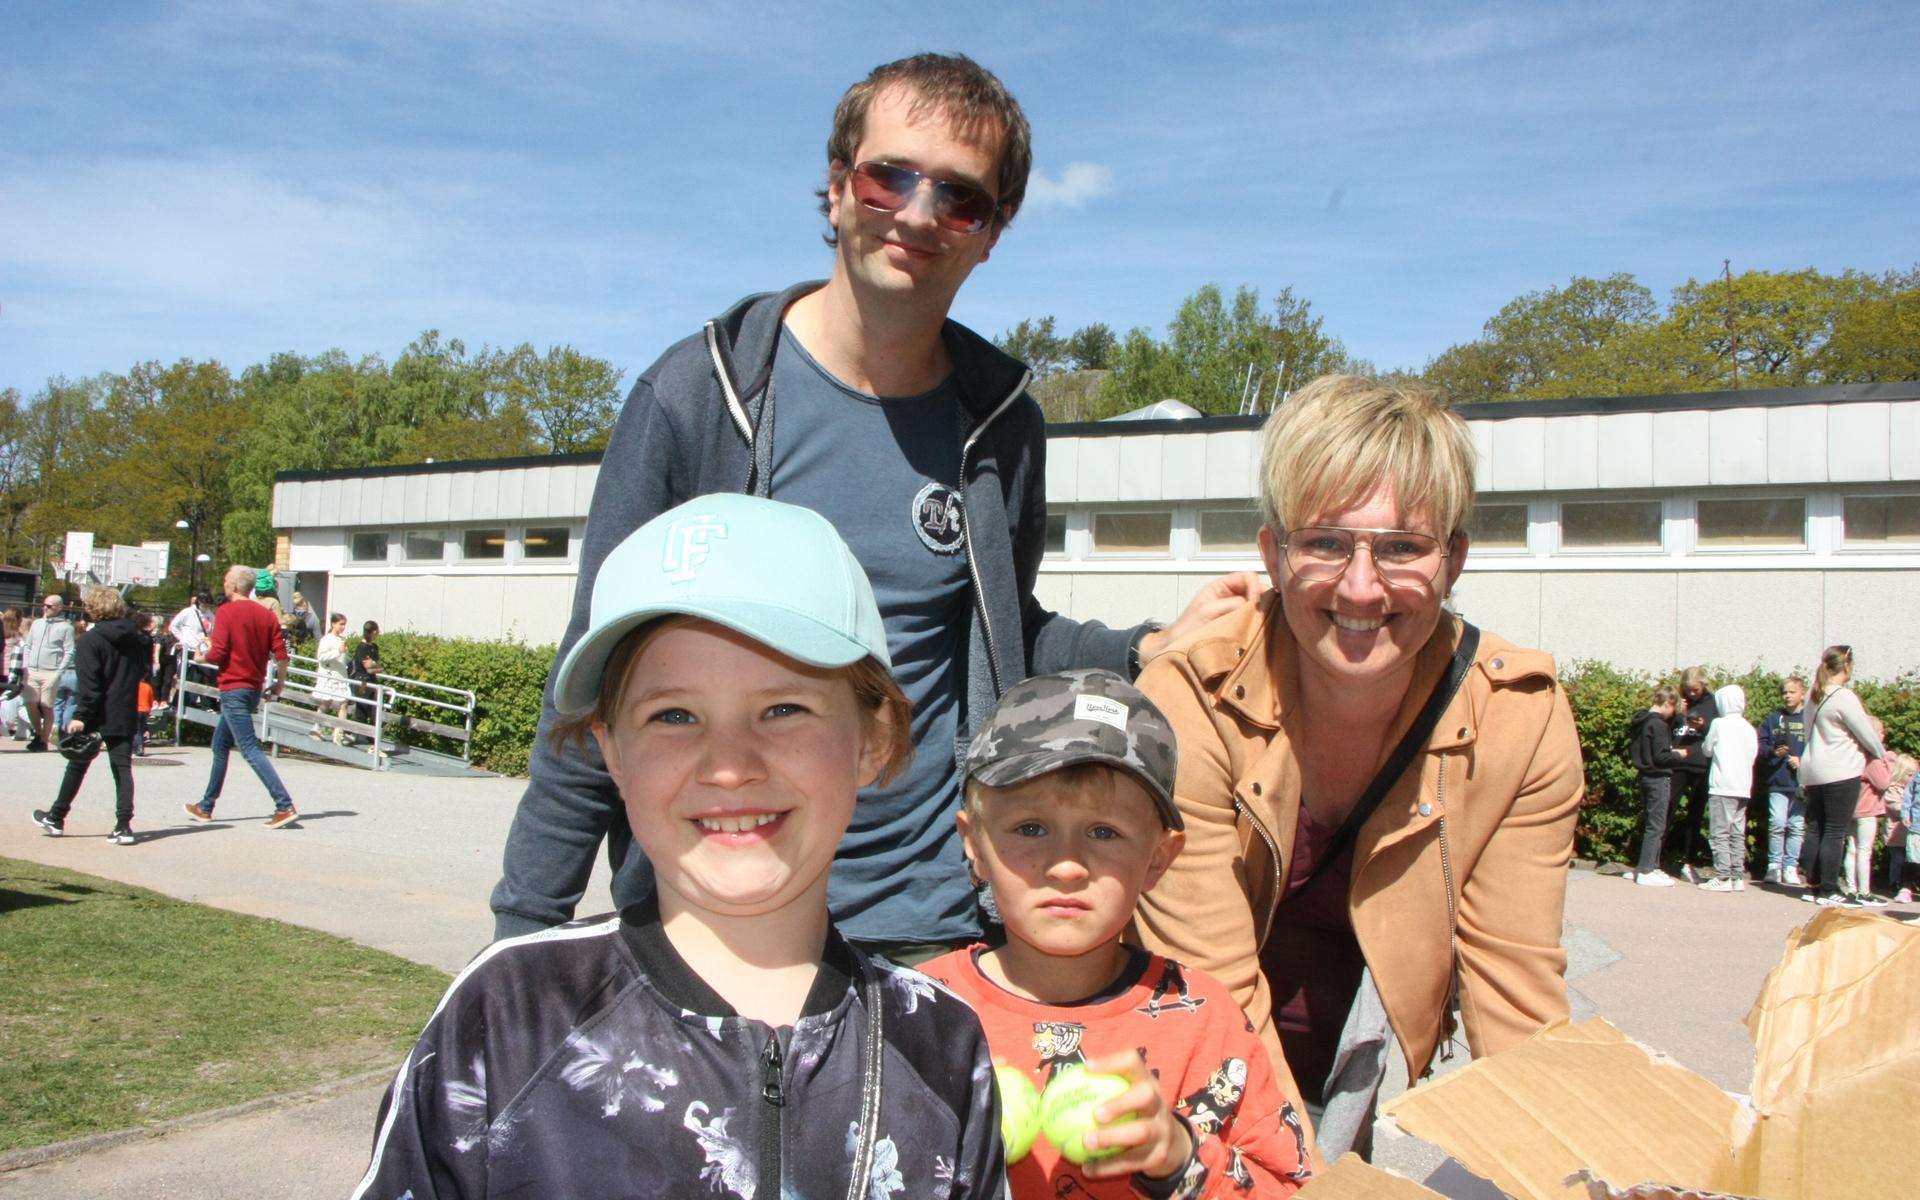 Familjen Malmin består av dottern Klara som går i ettan, sonen Felix på förskolan, pappa Fredrik och mamma Elin.